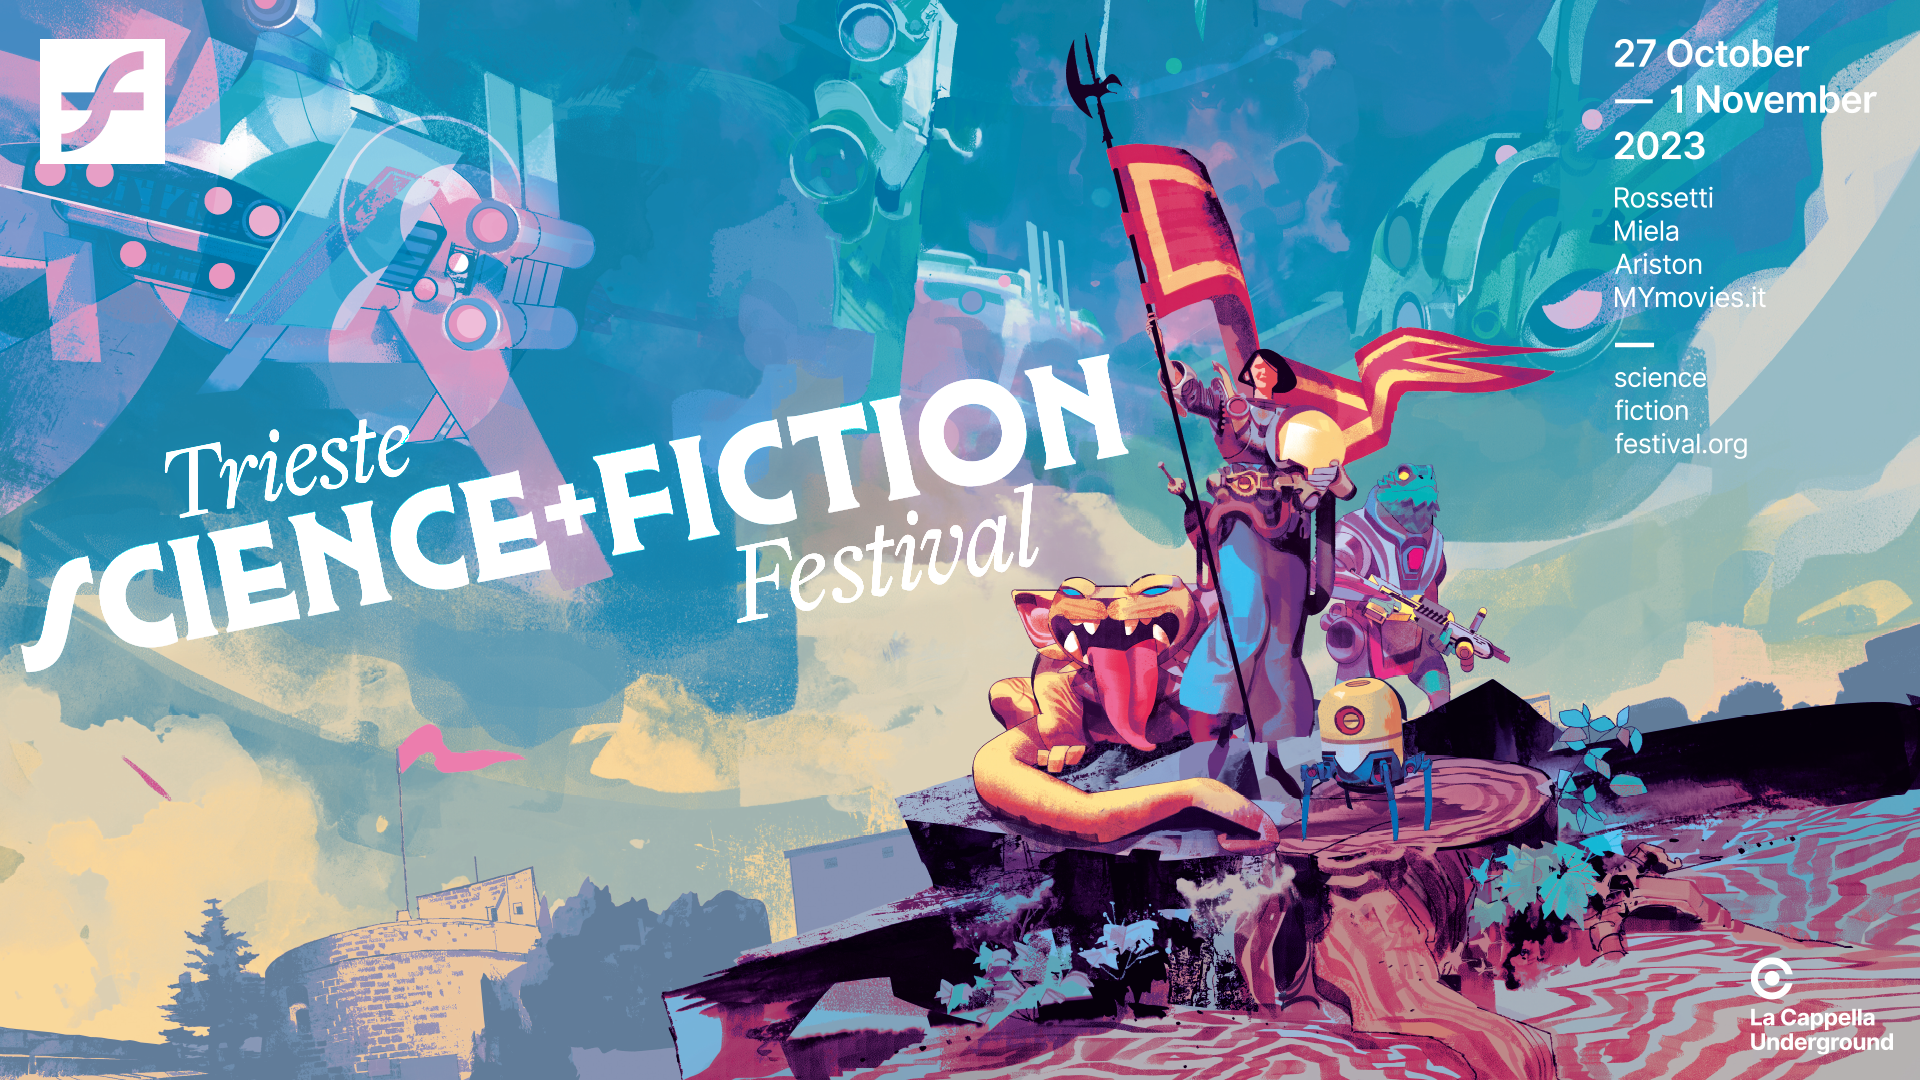 locandina trieste science+fiction festival